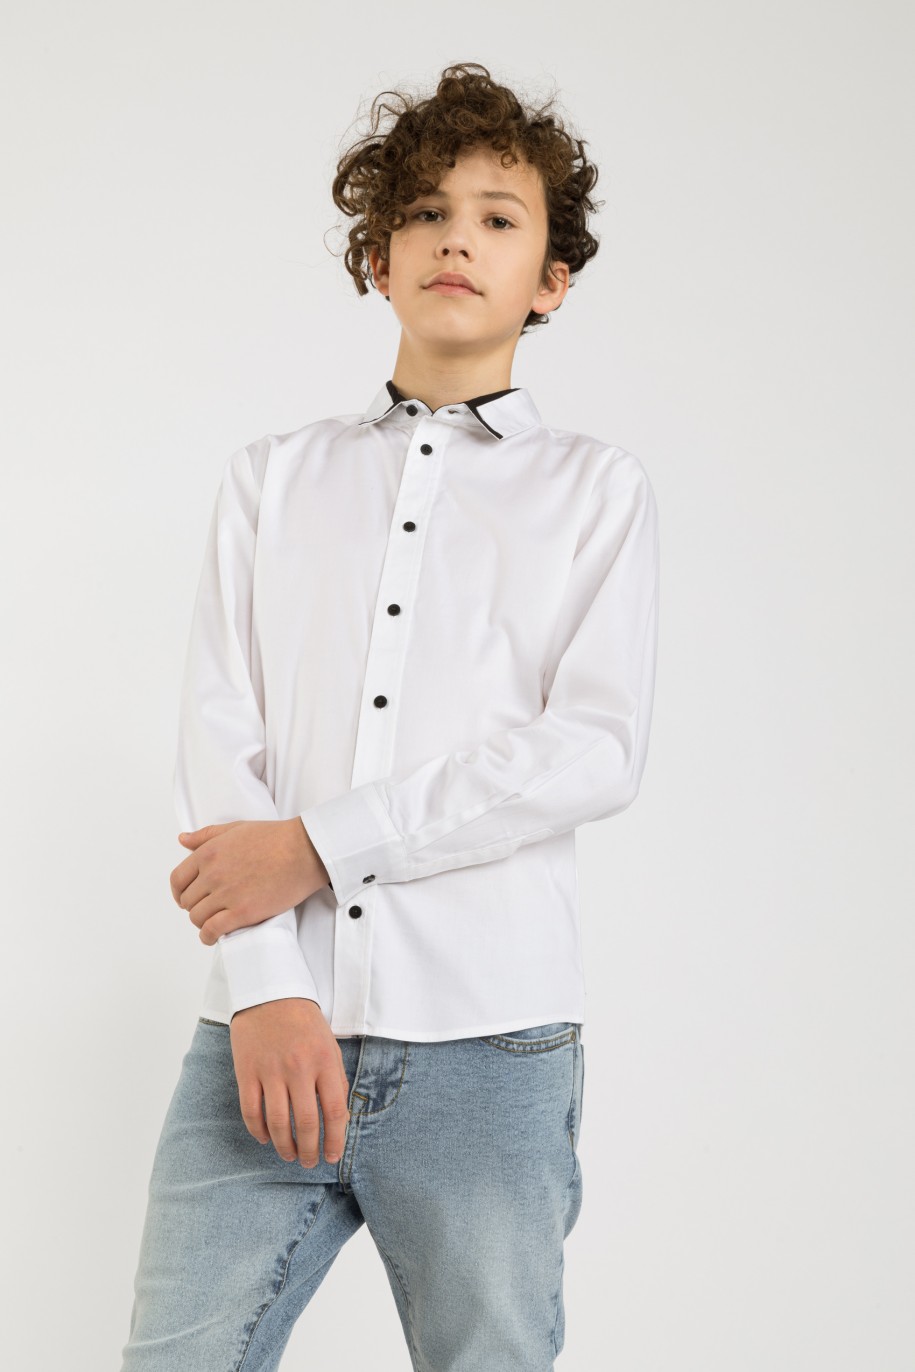 Biała elegancka koszula dla chłopaka - 32678